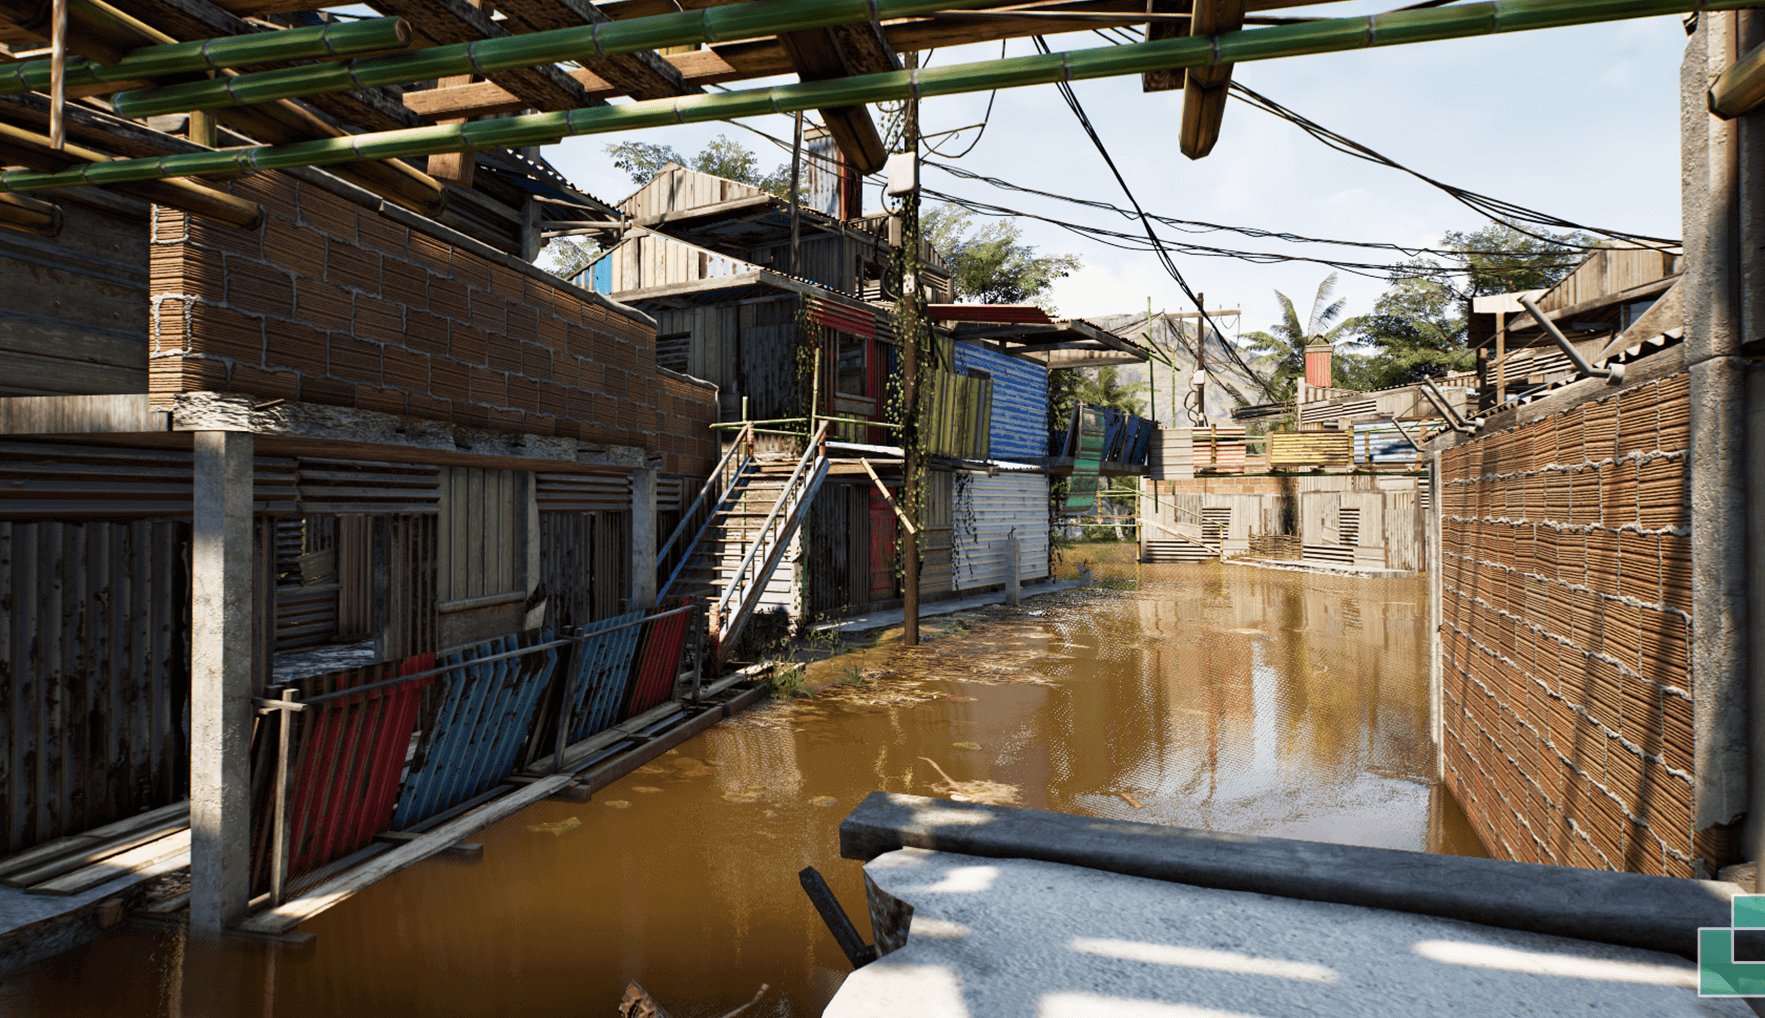 【UE5】棚户区贫民窟 – Shanty Town Slums